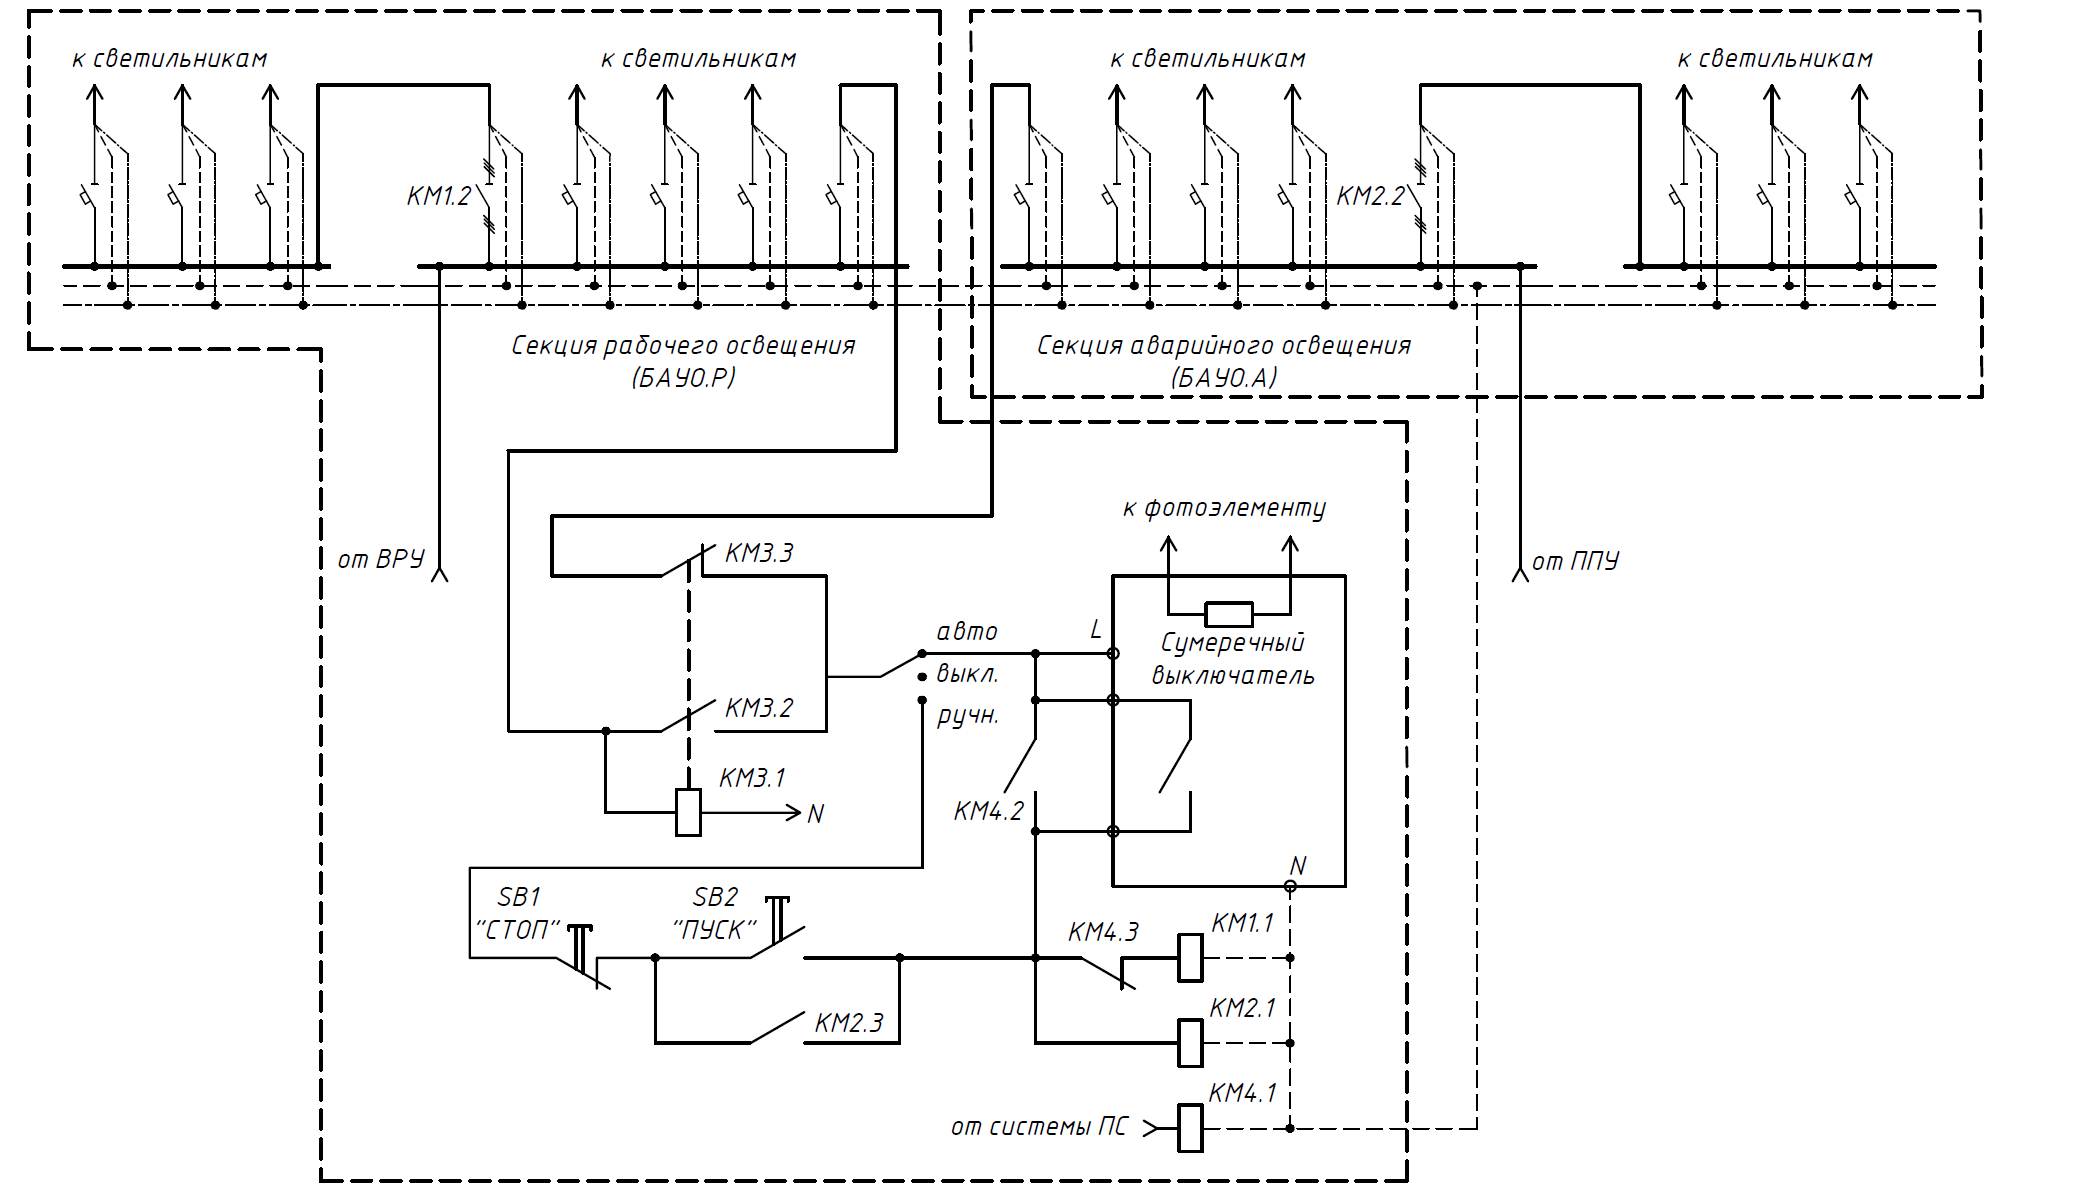 Схема блока автоматического управления освещением ВРУ21L-401